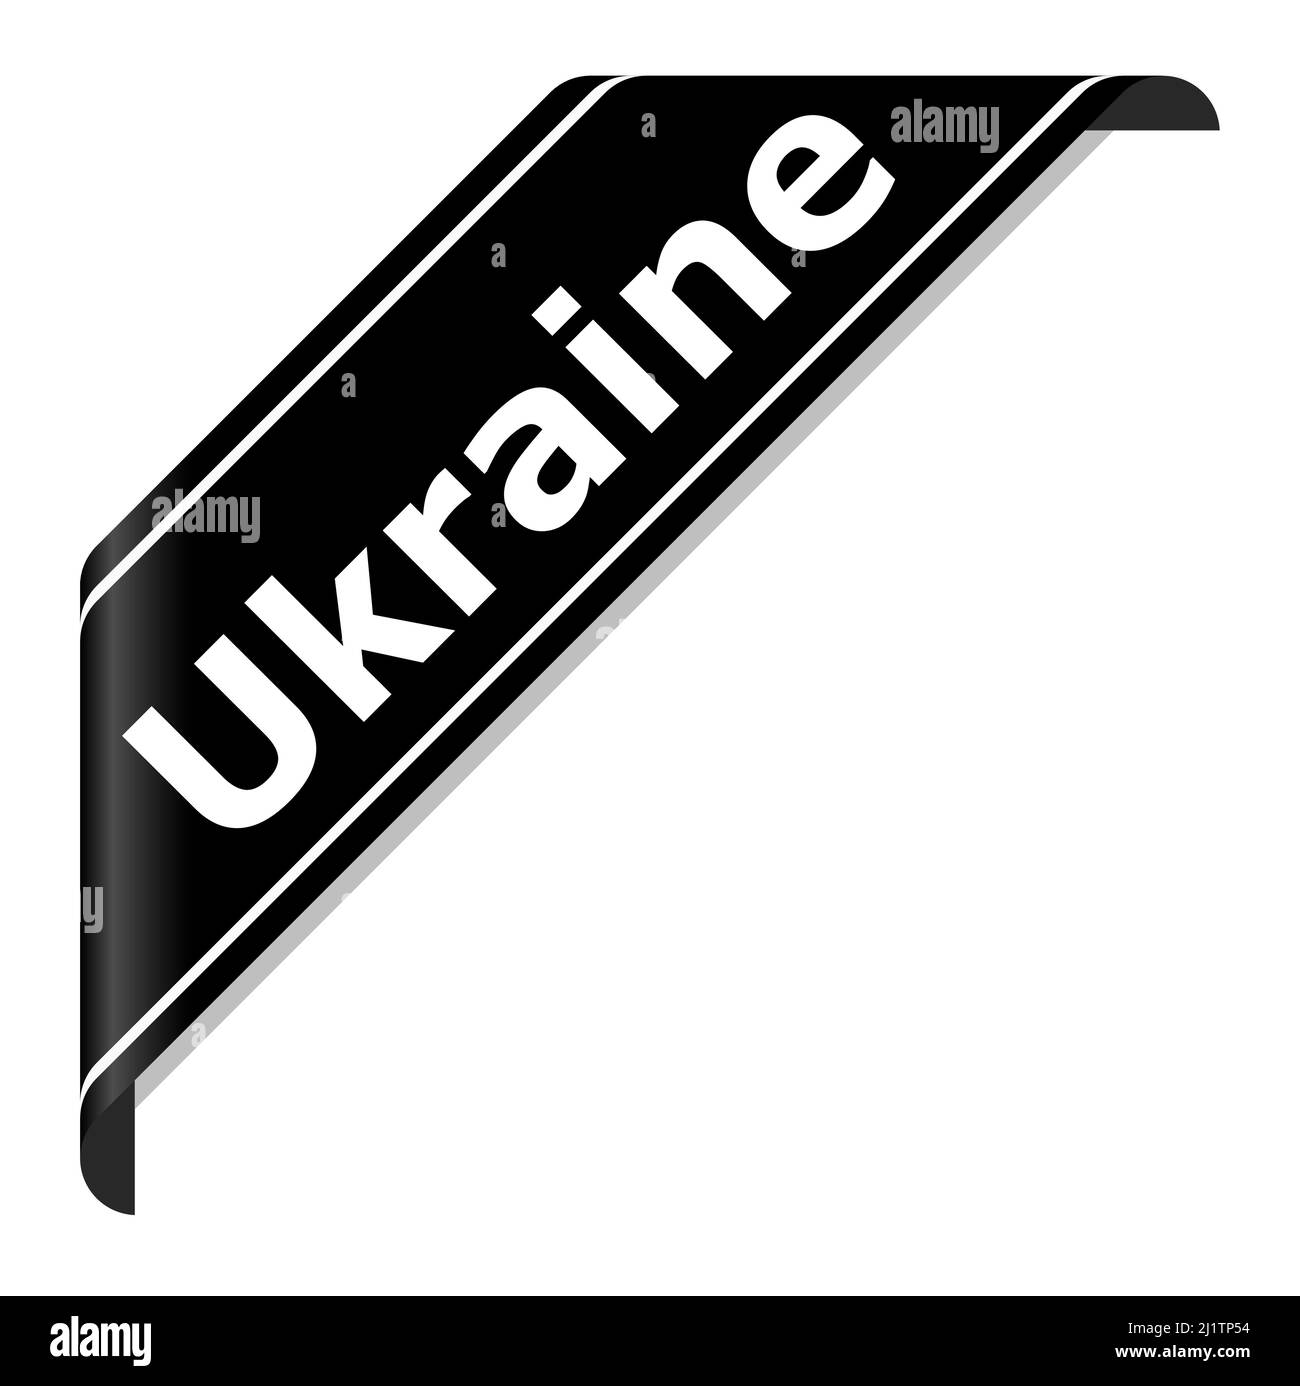 illustration vectorielle eps de la bannière noire de deuil avec texte ukraine - ARRÊTER LA GUERRE - conflit avec la russie 2022 Illustration de Vecteur